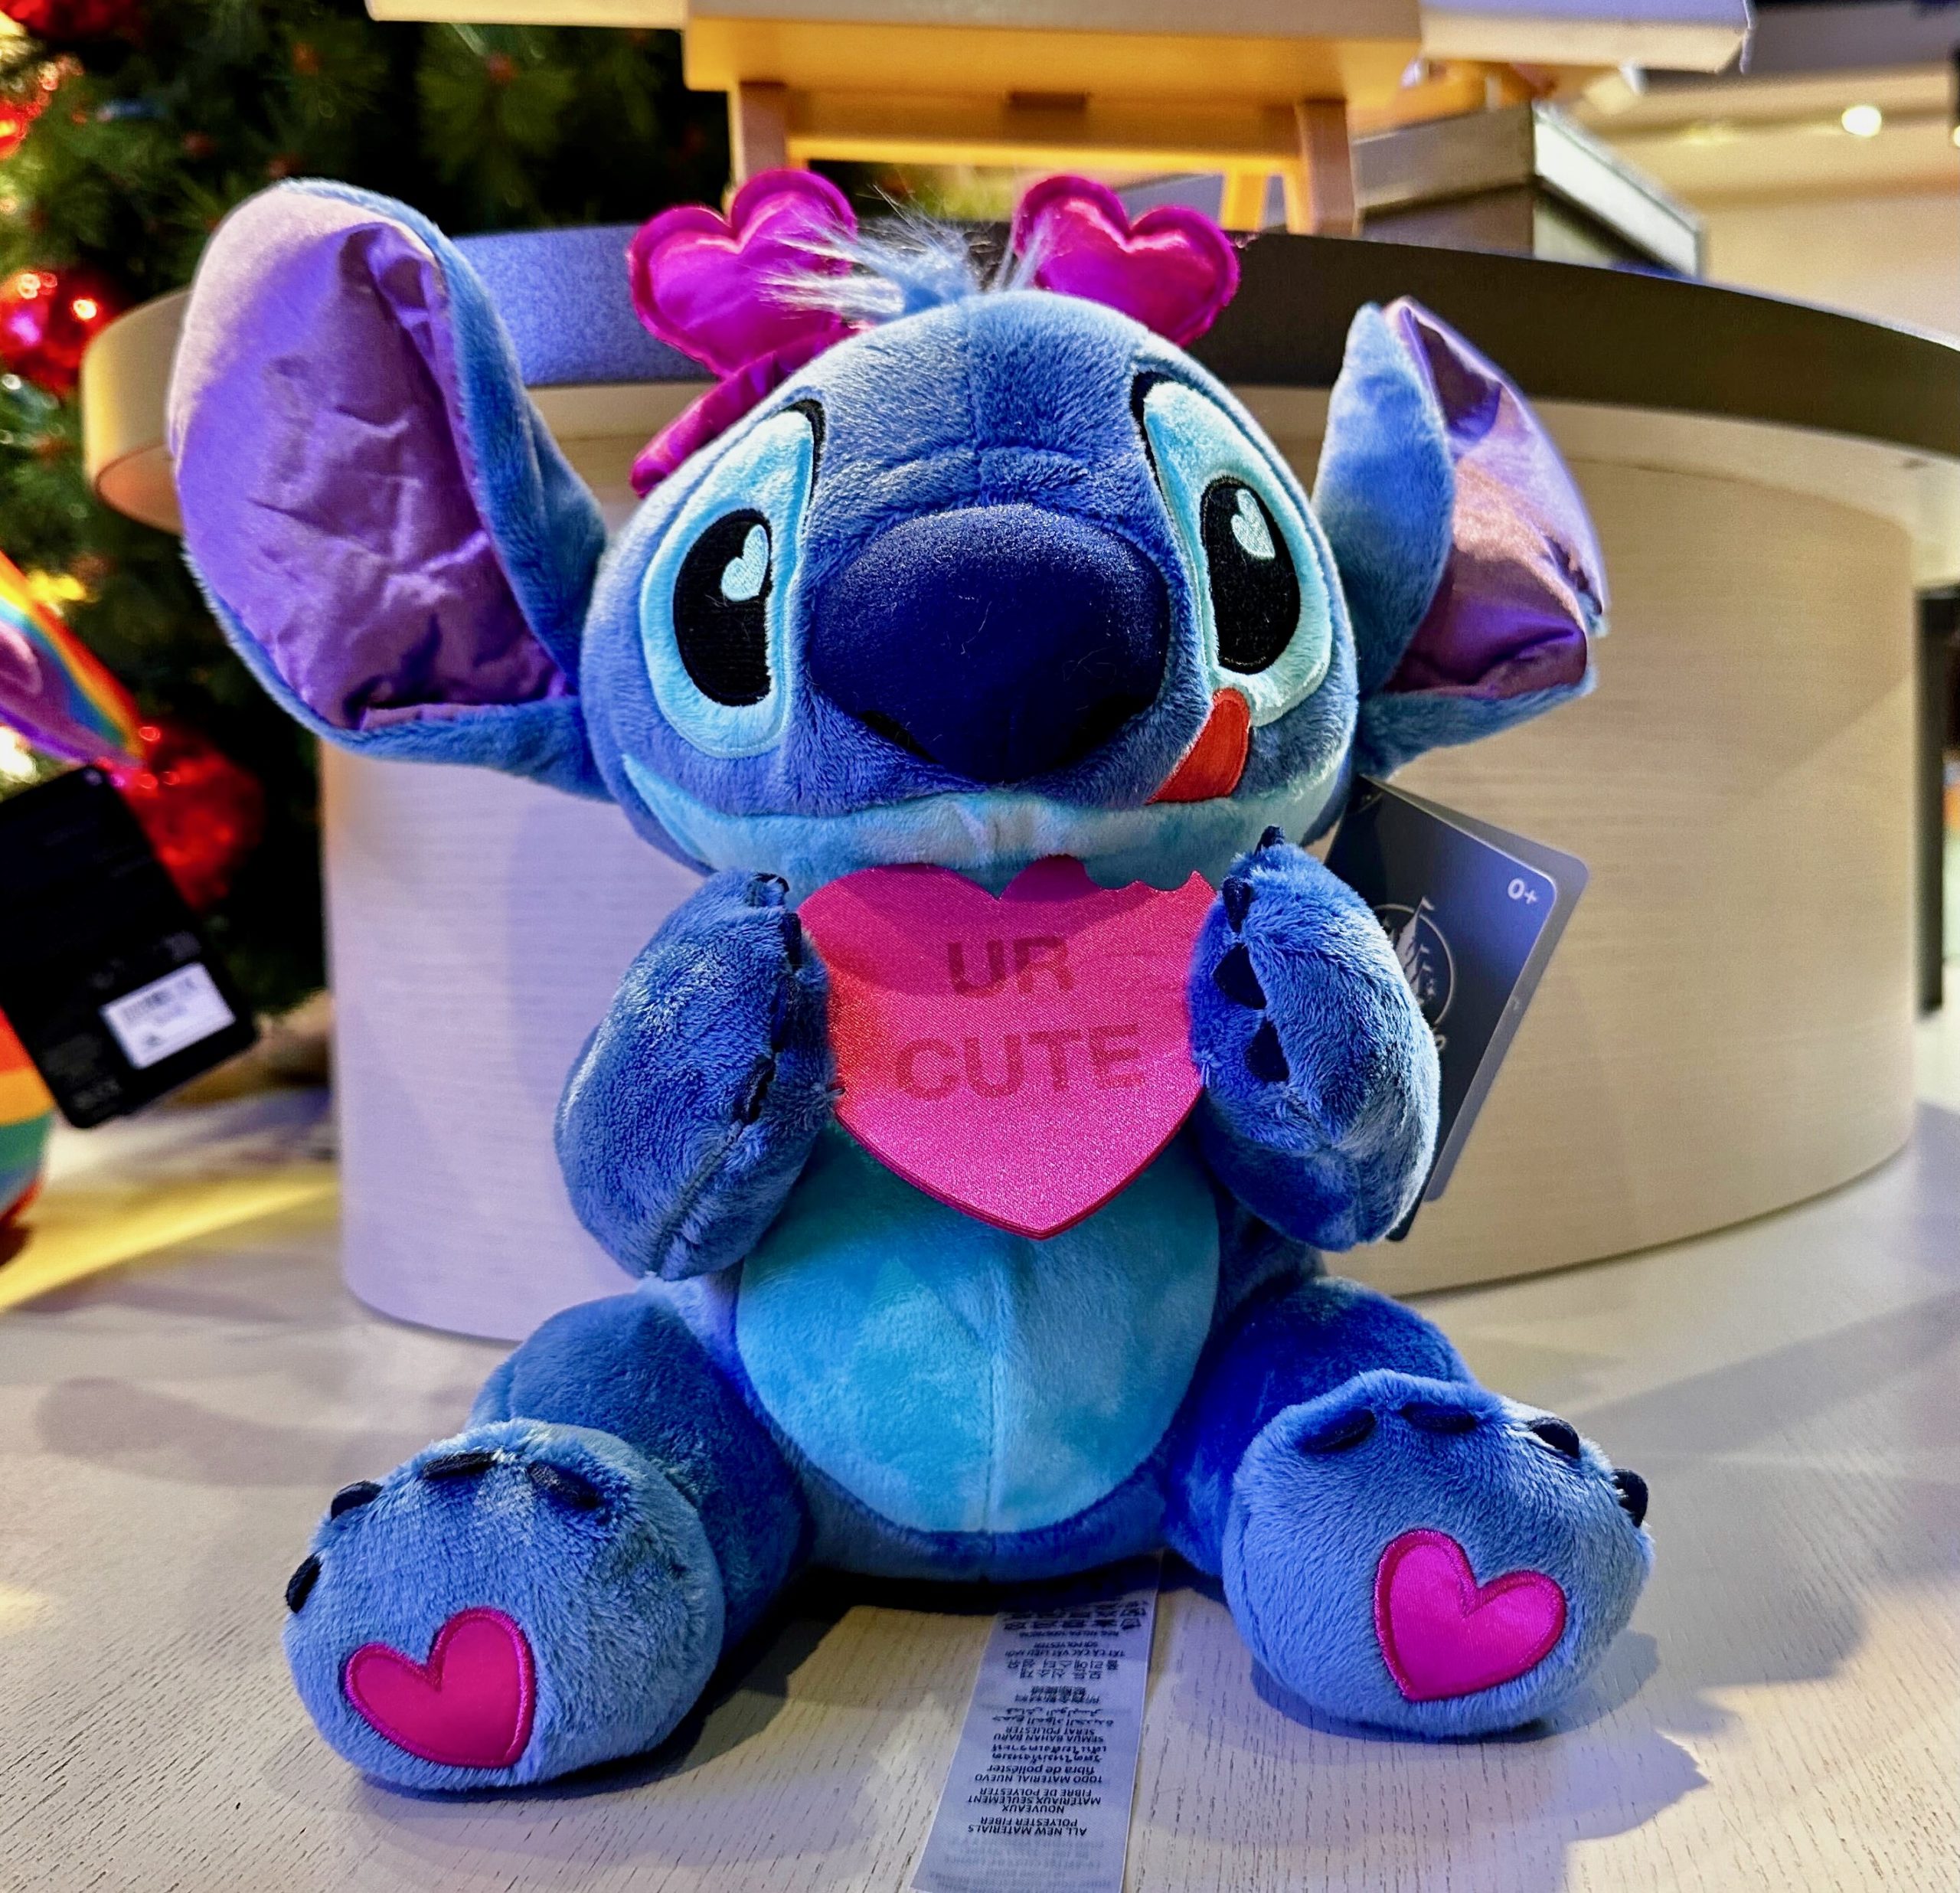 Stitch Valentine's Day Plus UR Cute